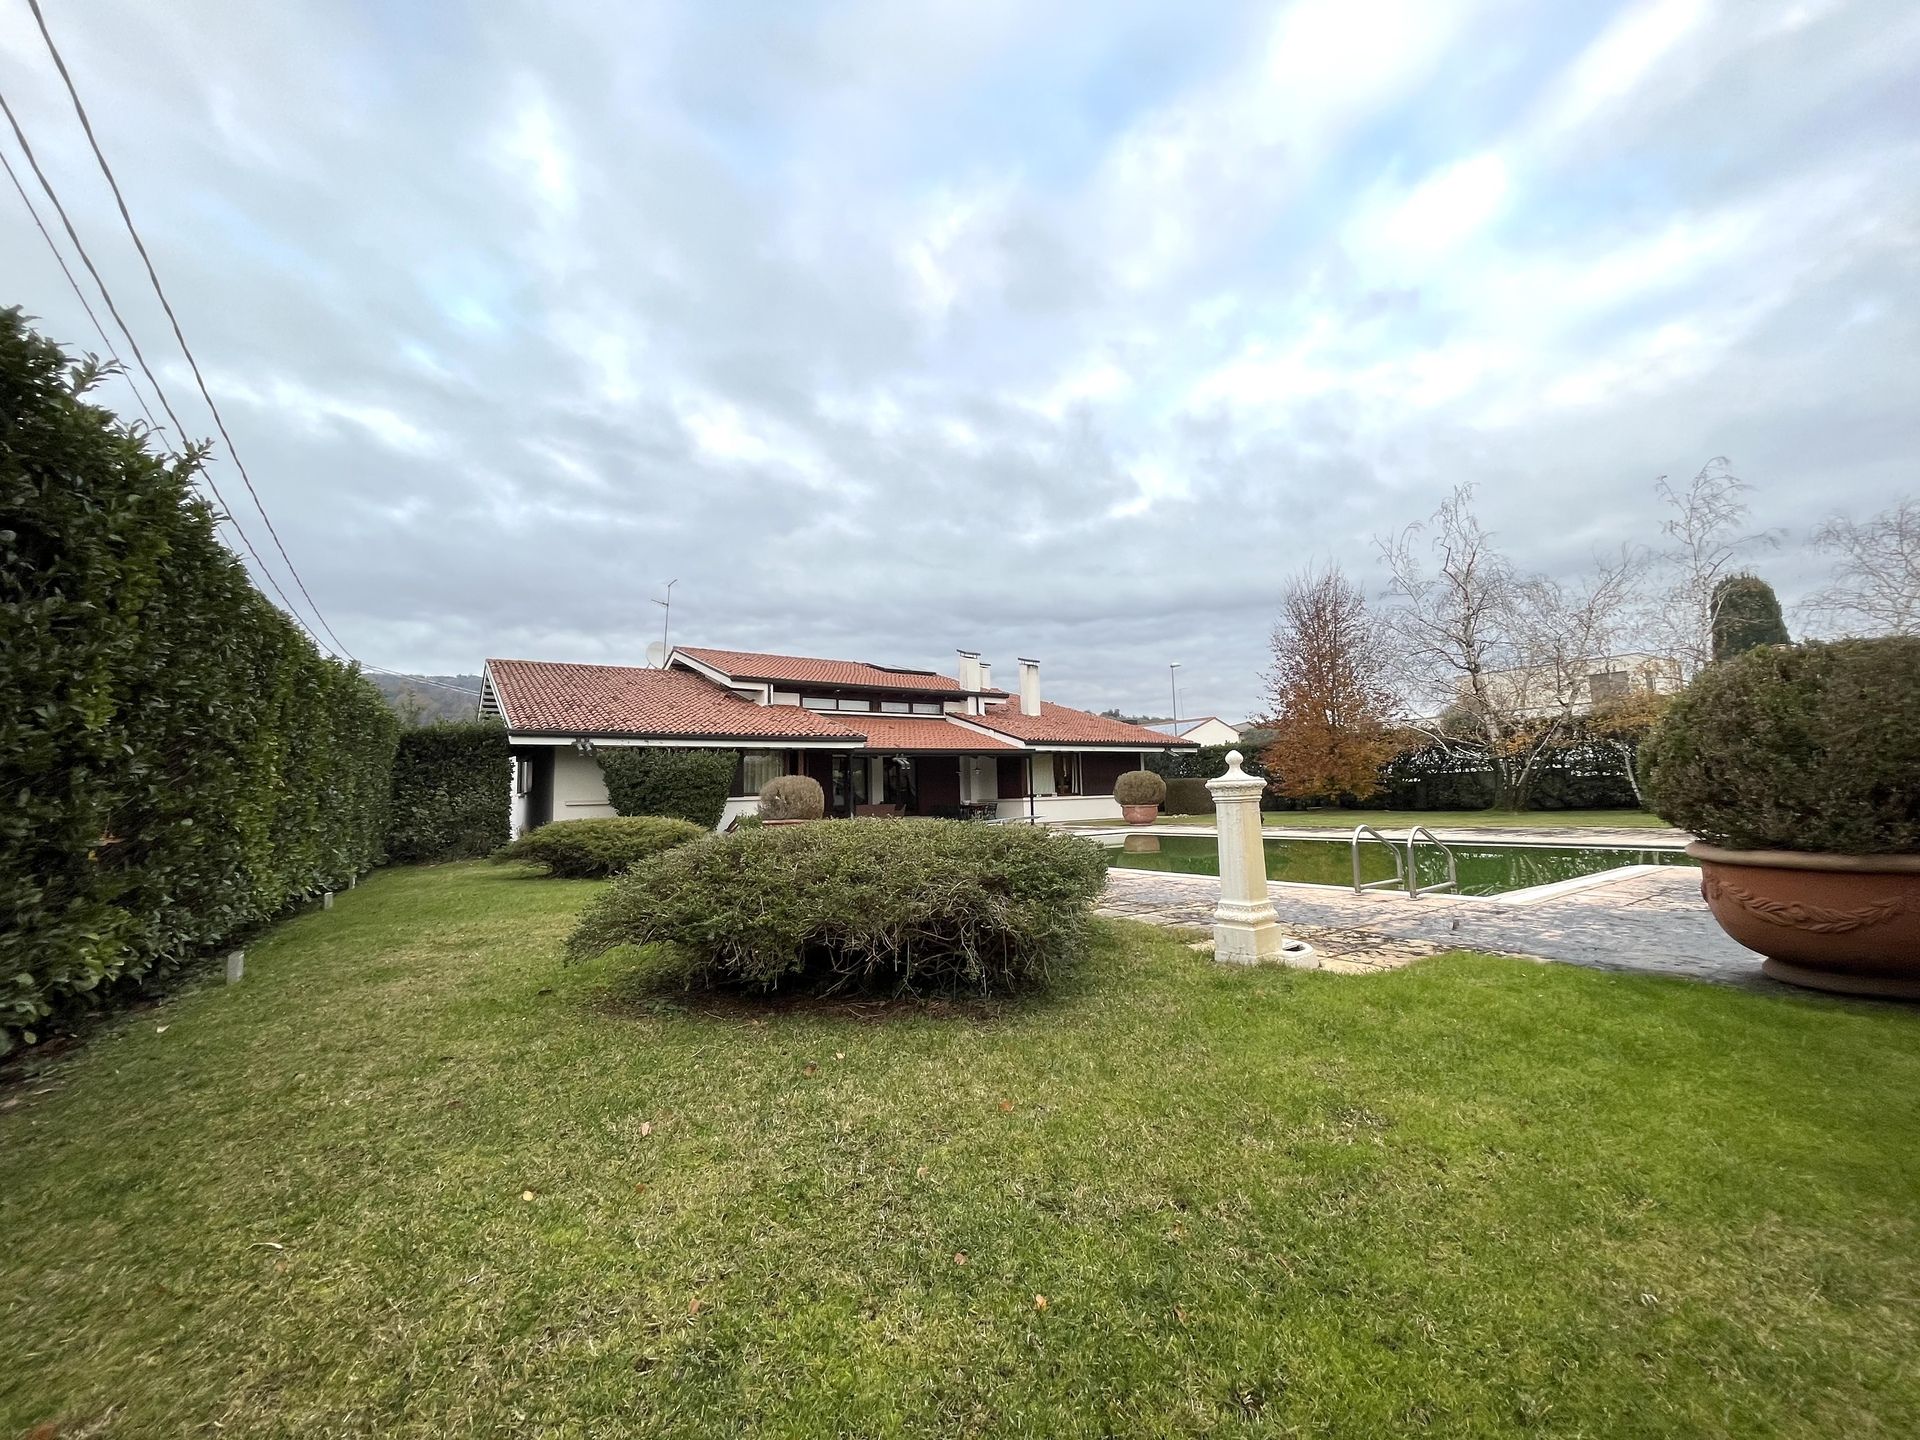 For sale villa in city Bassano del Grappa Veneto